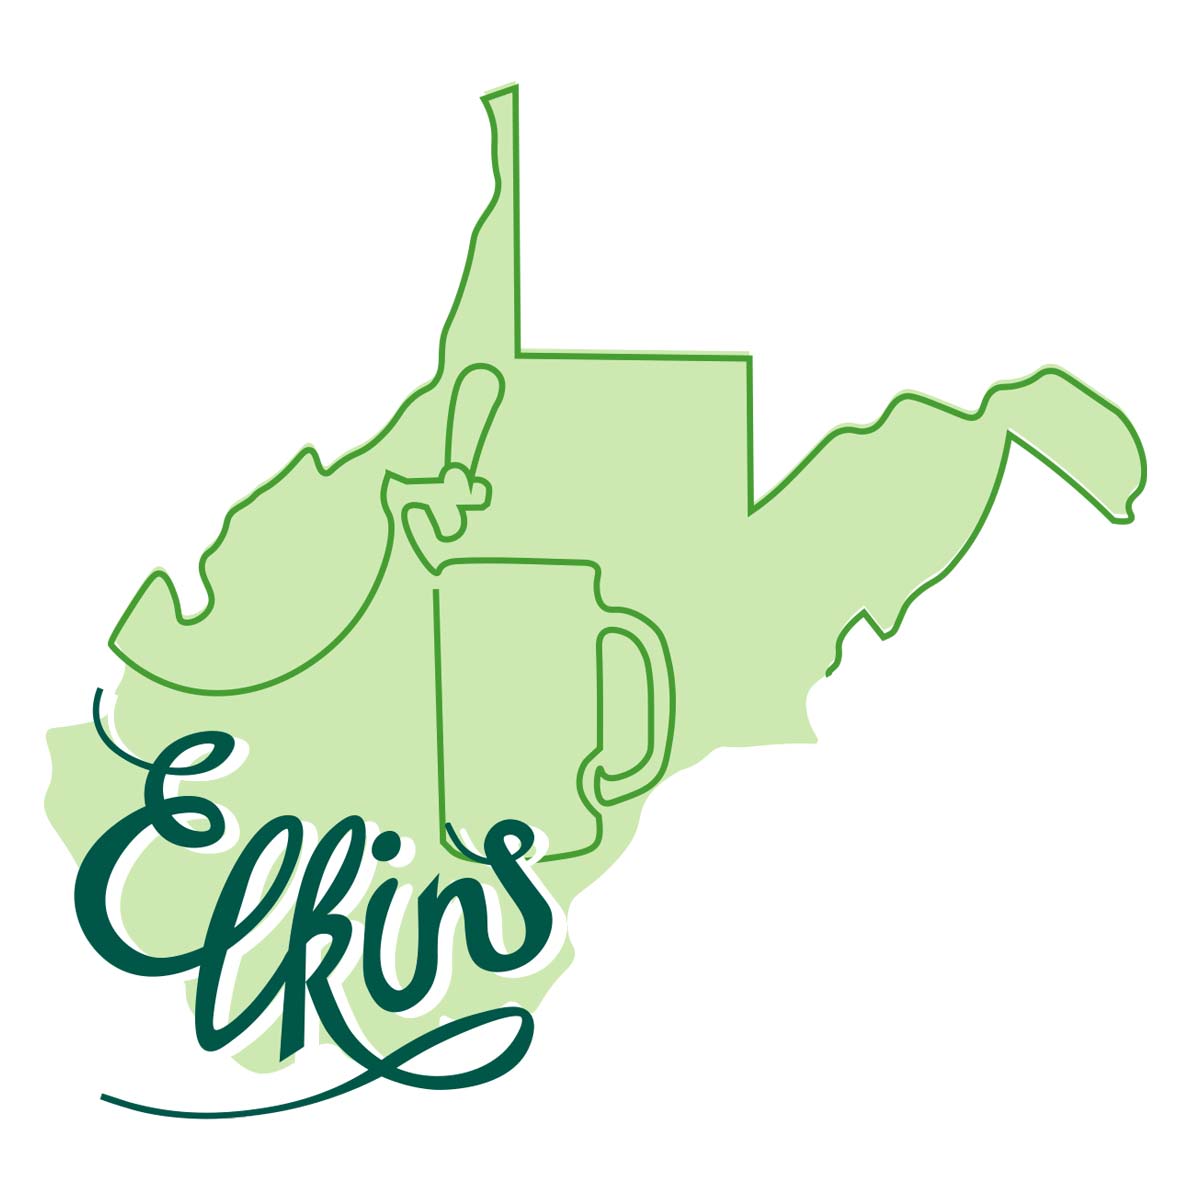 Downtown Elkins microbreweries logo variation